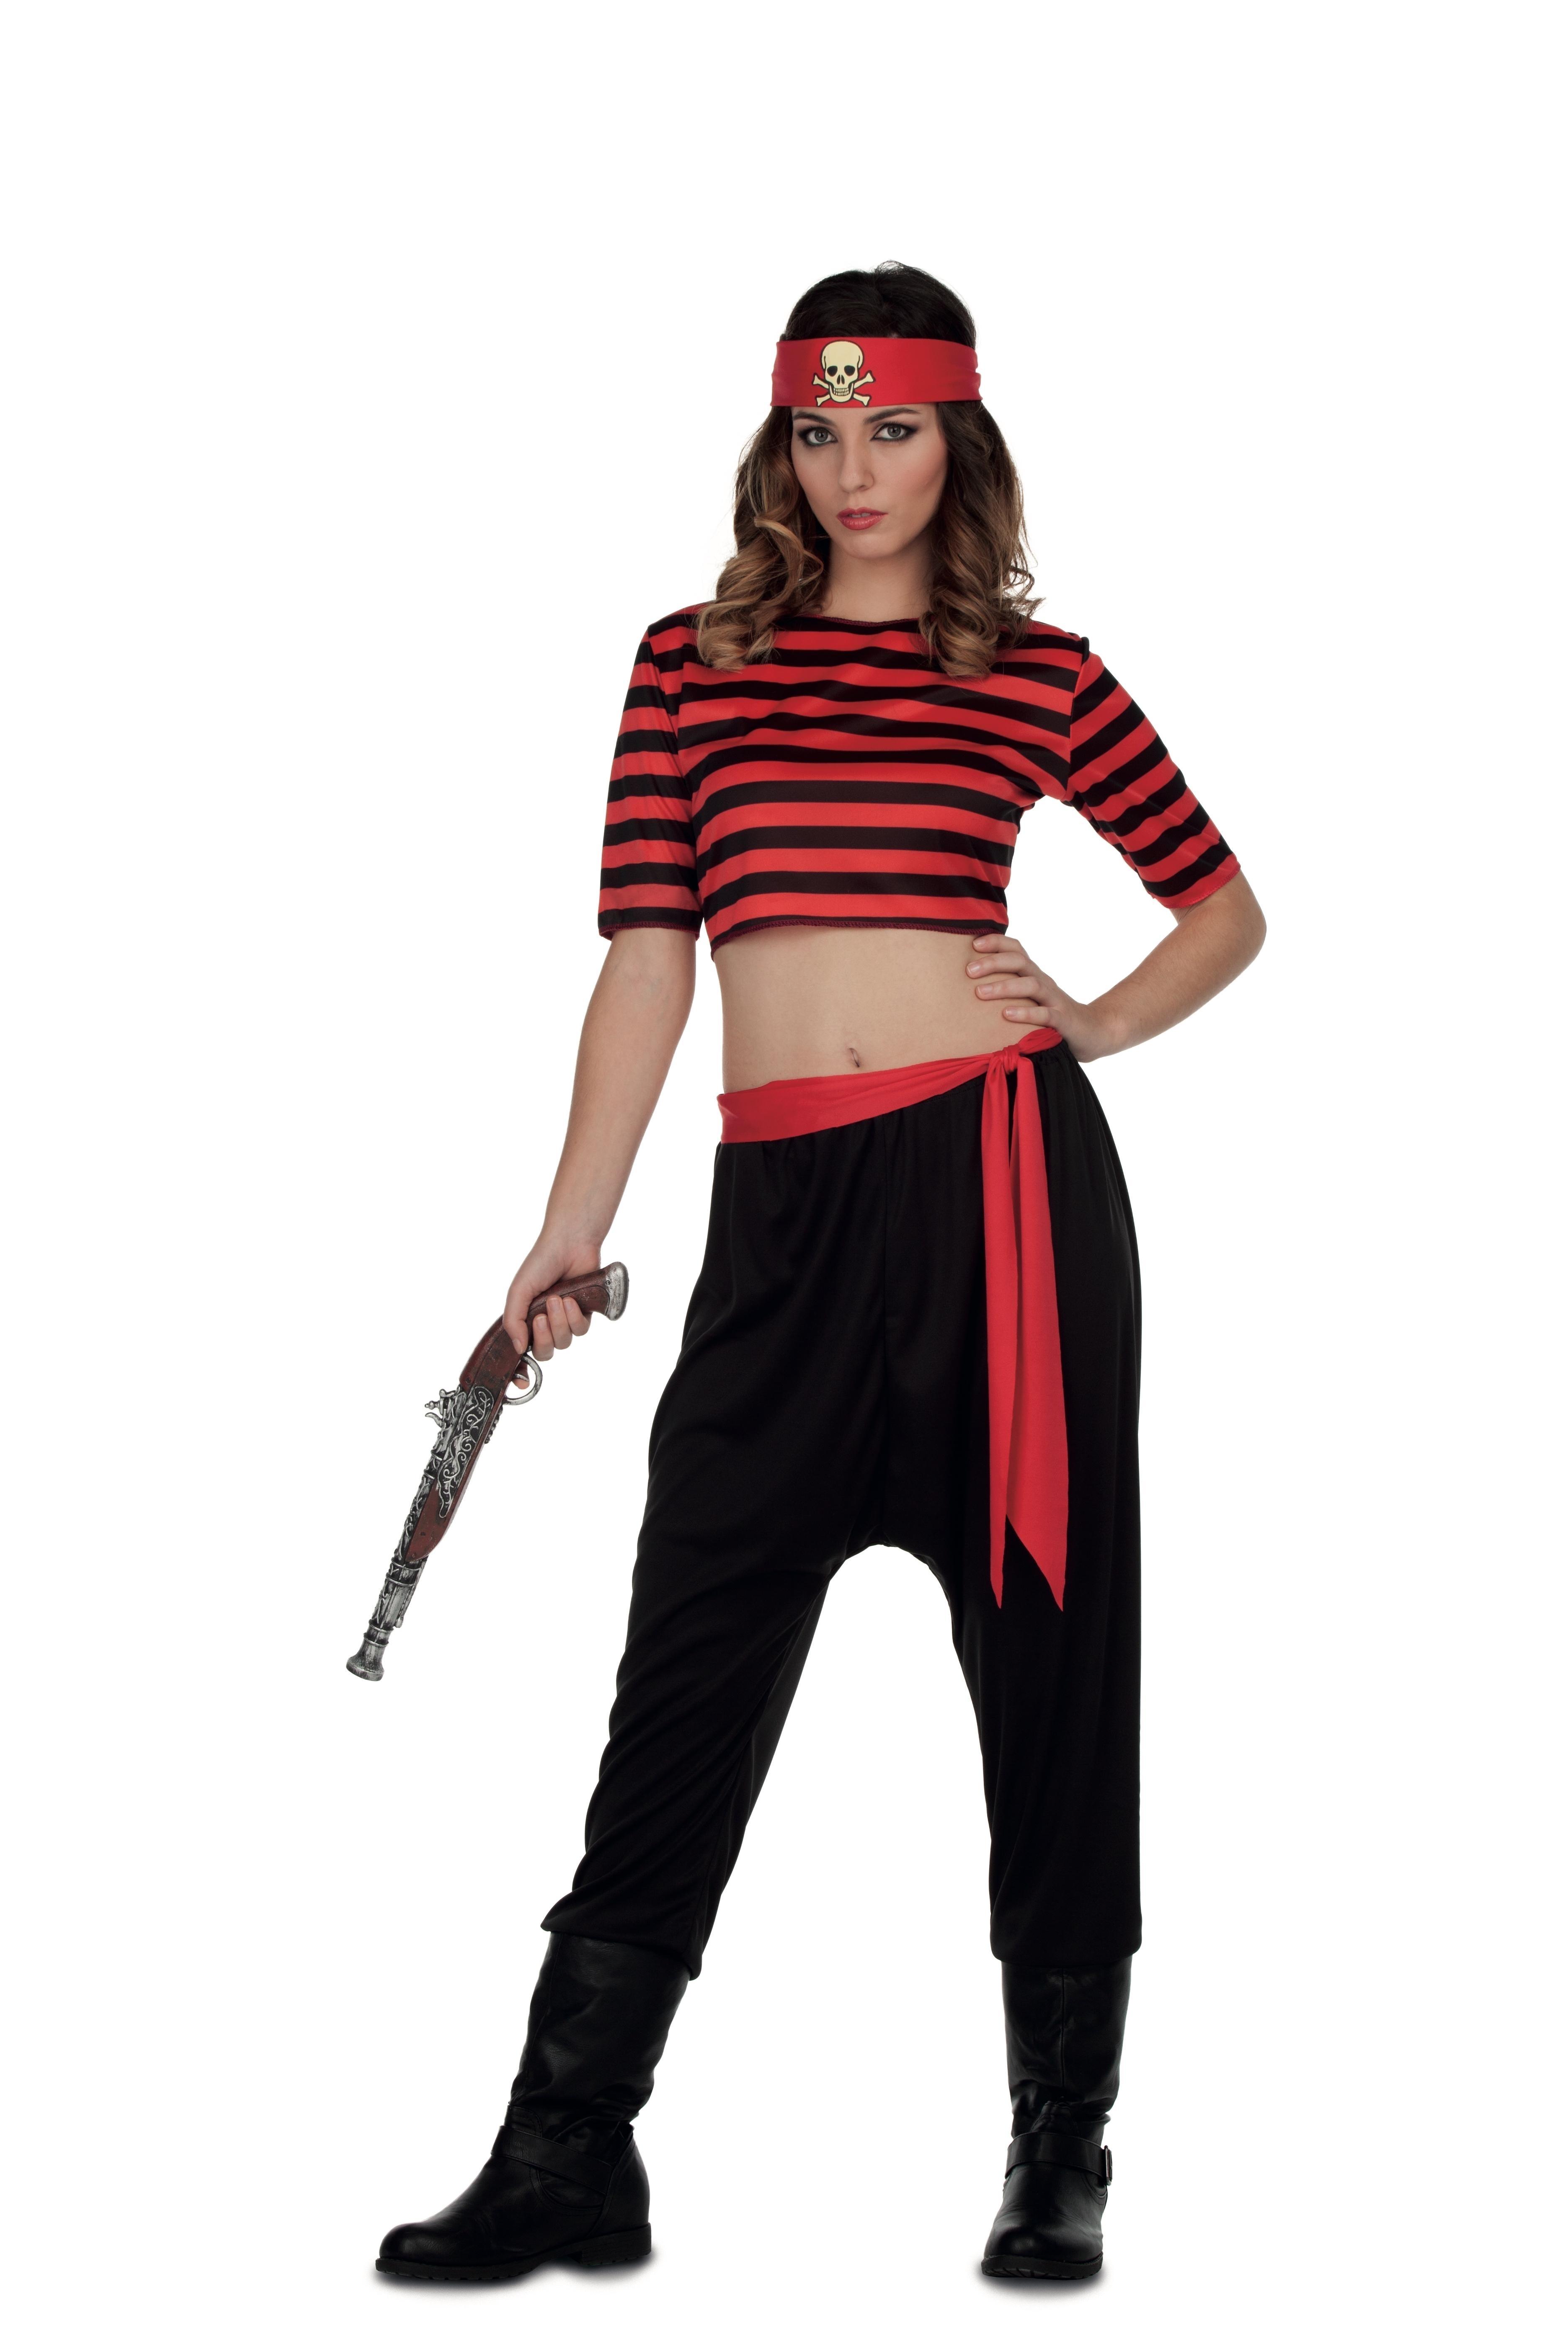 Disfraz Pirata mujer Adulto